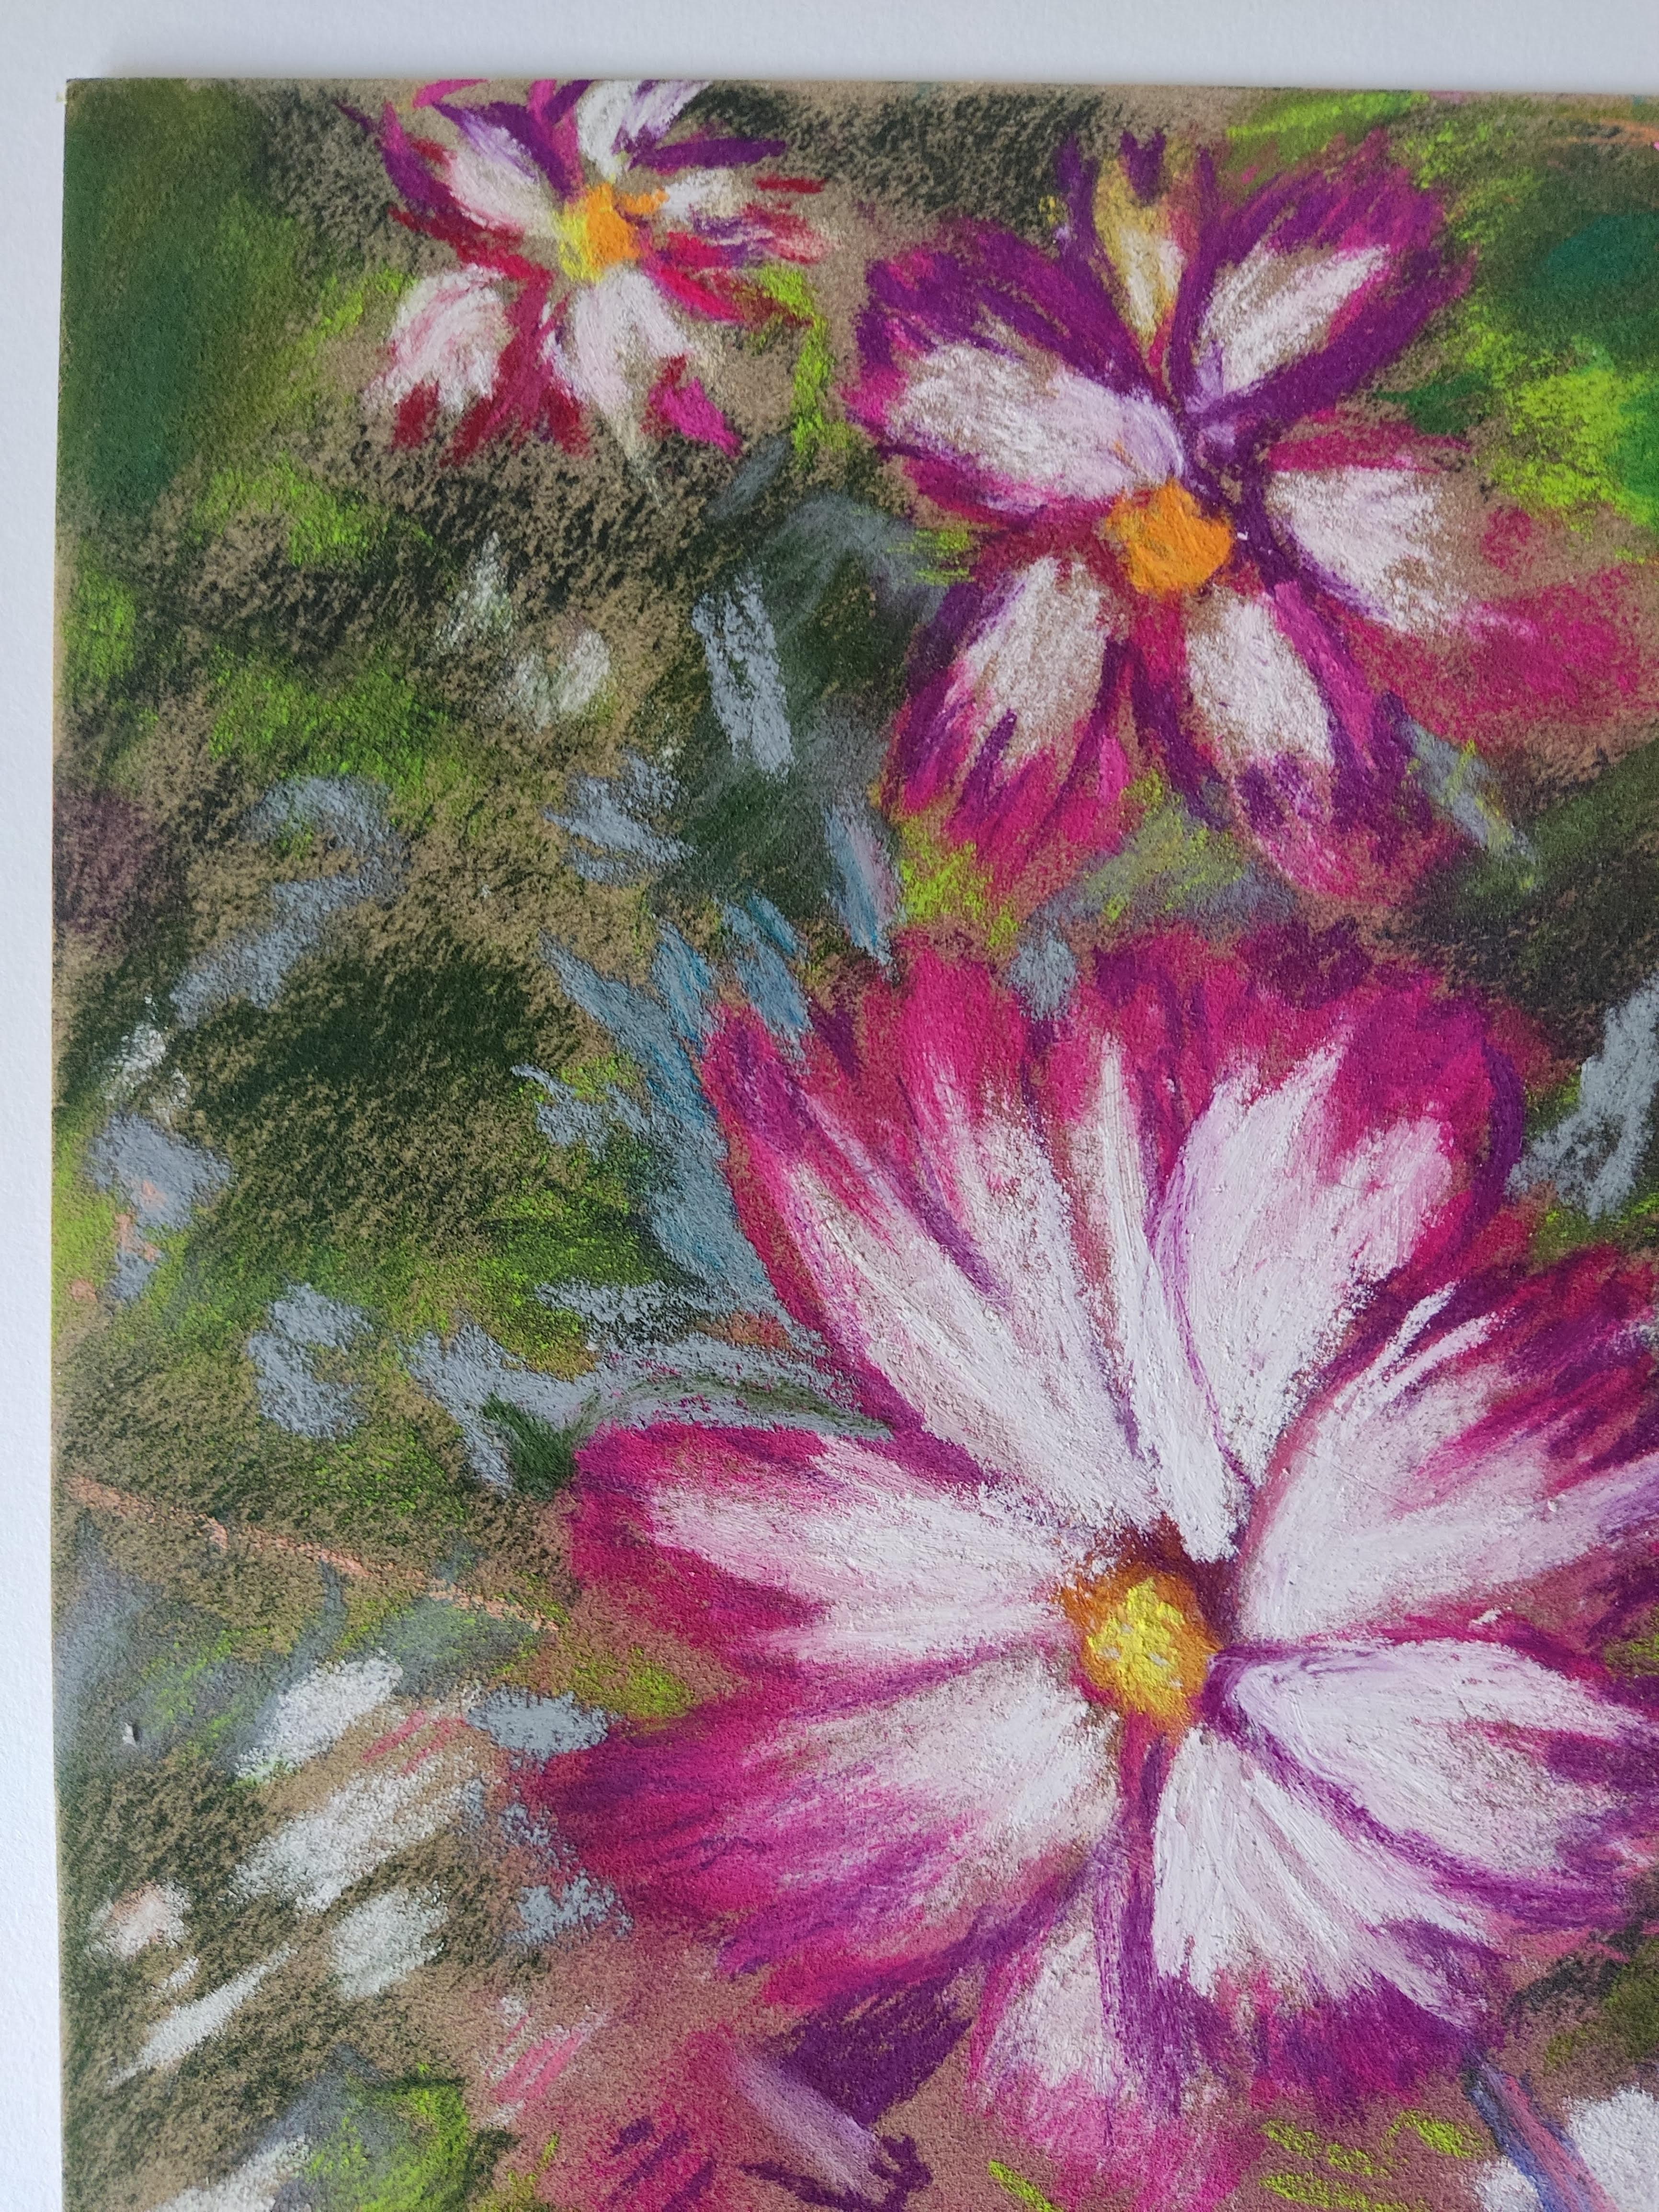 Flowers de jardin, dessin original au pastel, couleur, France, impressionnisme - Art de Unknown